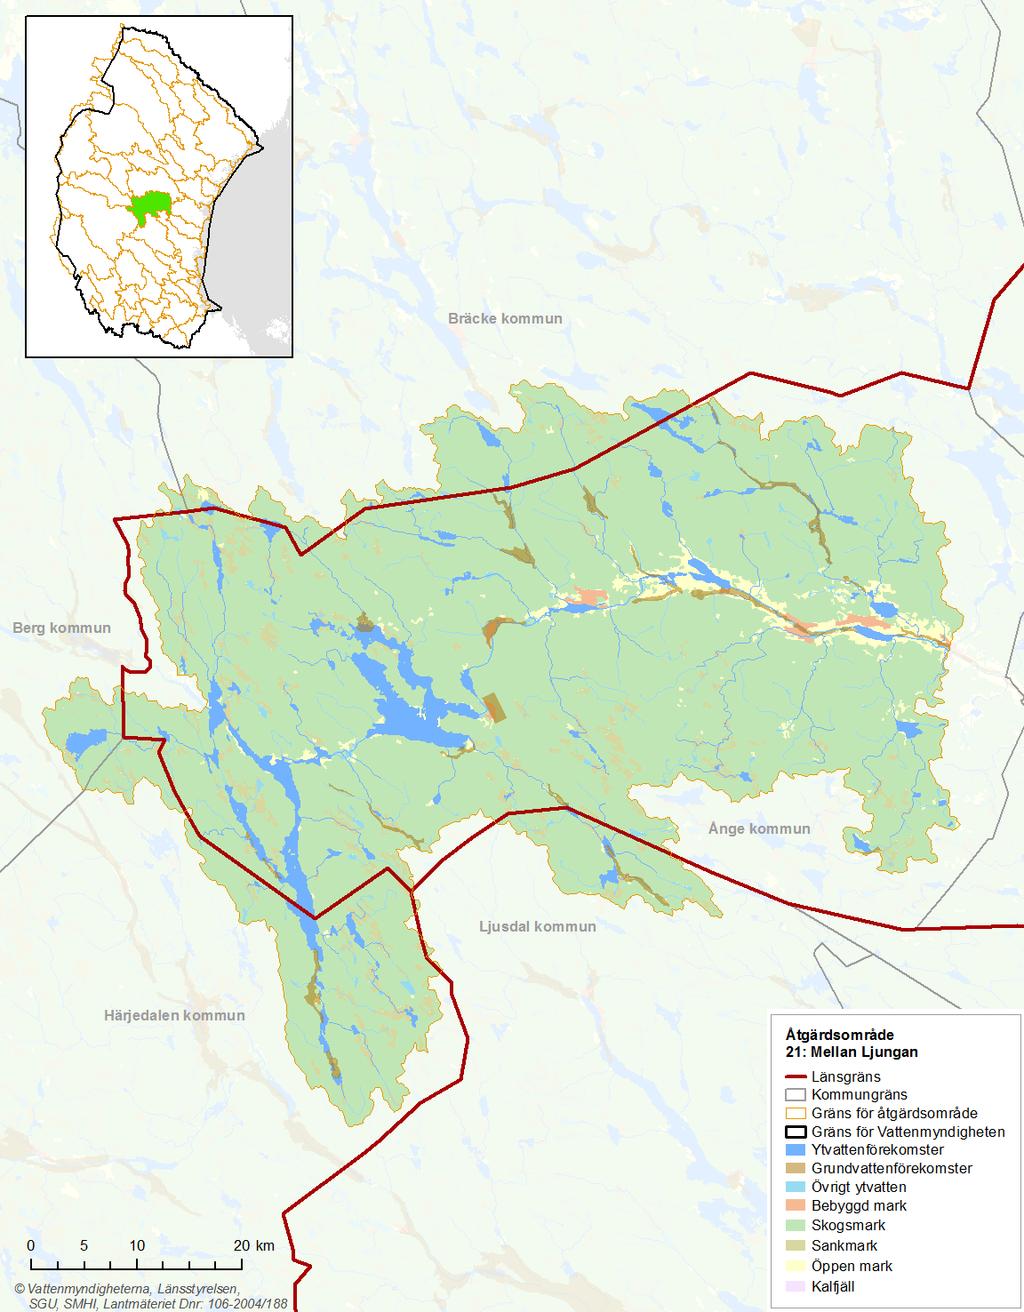 Bild 1: Kartan visar Mellan Ljungans markanvändning